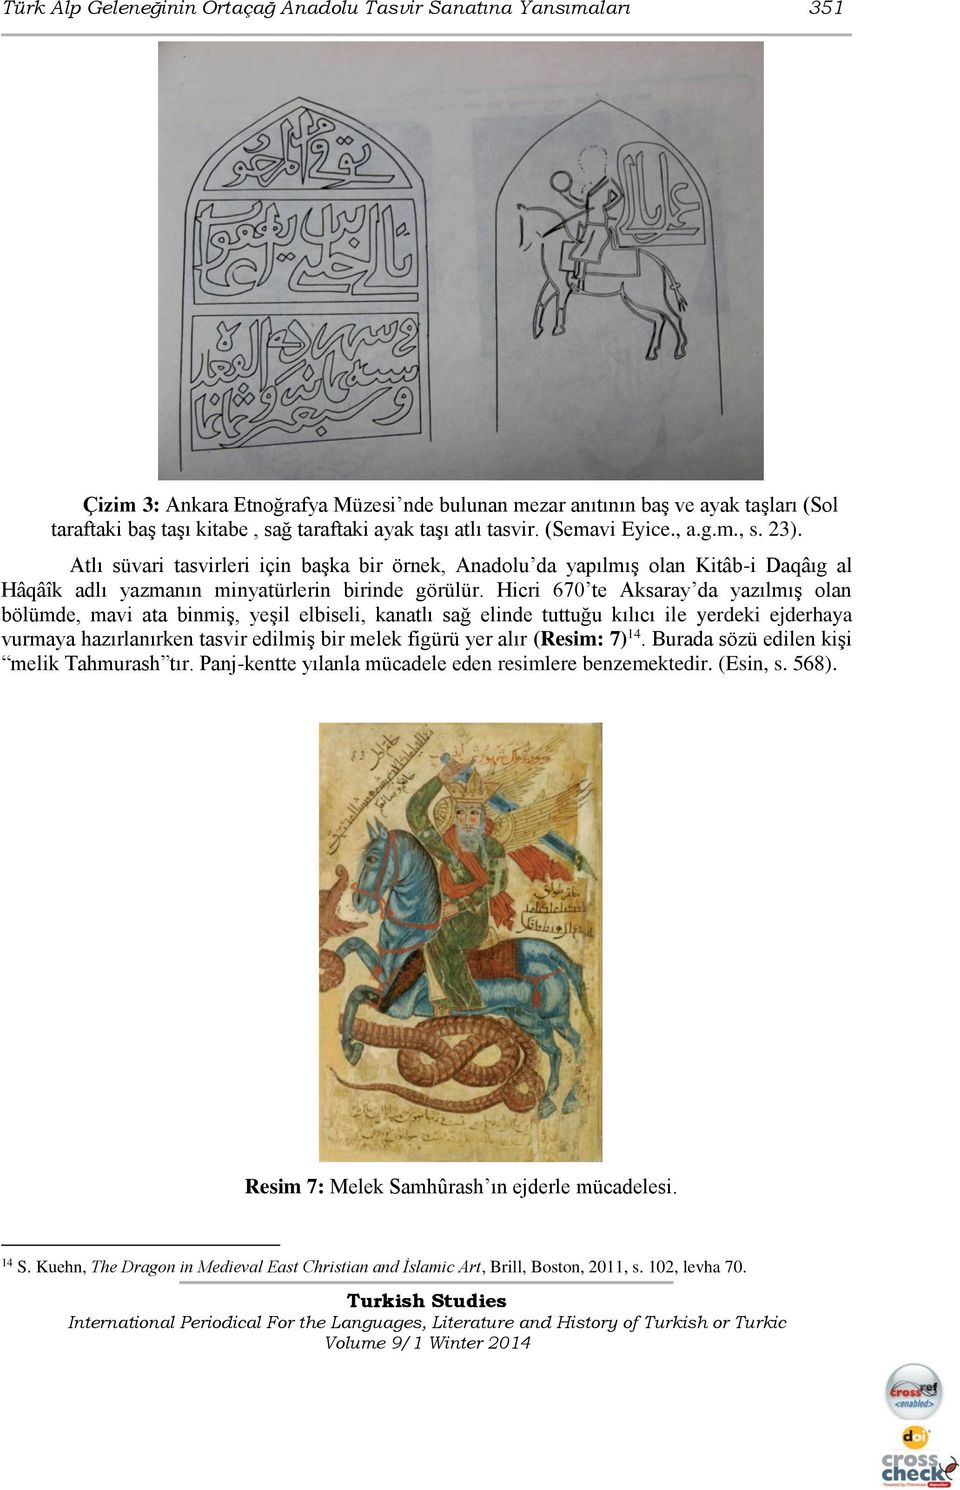 Hicri 670 te Aksaray da yazılmış olan bölümde, mavi ata binmiş, yeşil elbiseli, kanatlı sağ elinde tuttuğu kılıcı ile yerdeki ejderhaya vurmaya hazırlanırken tasvir edilmiş bir melek figürü yer alır